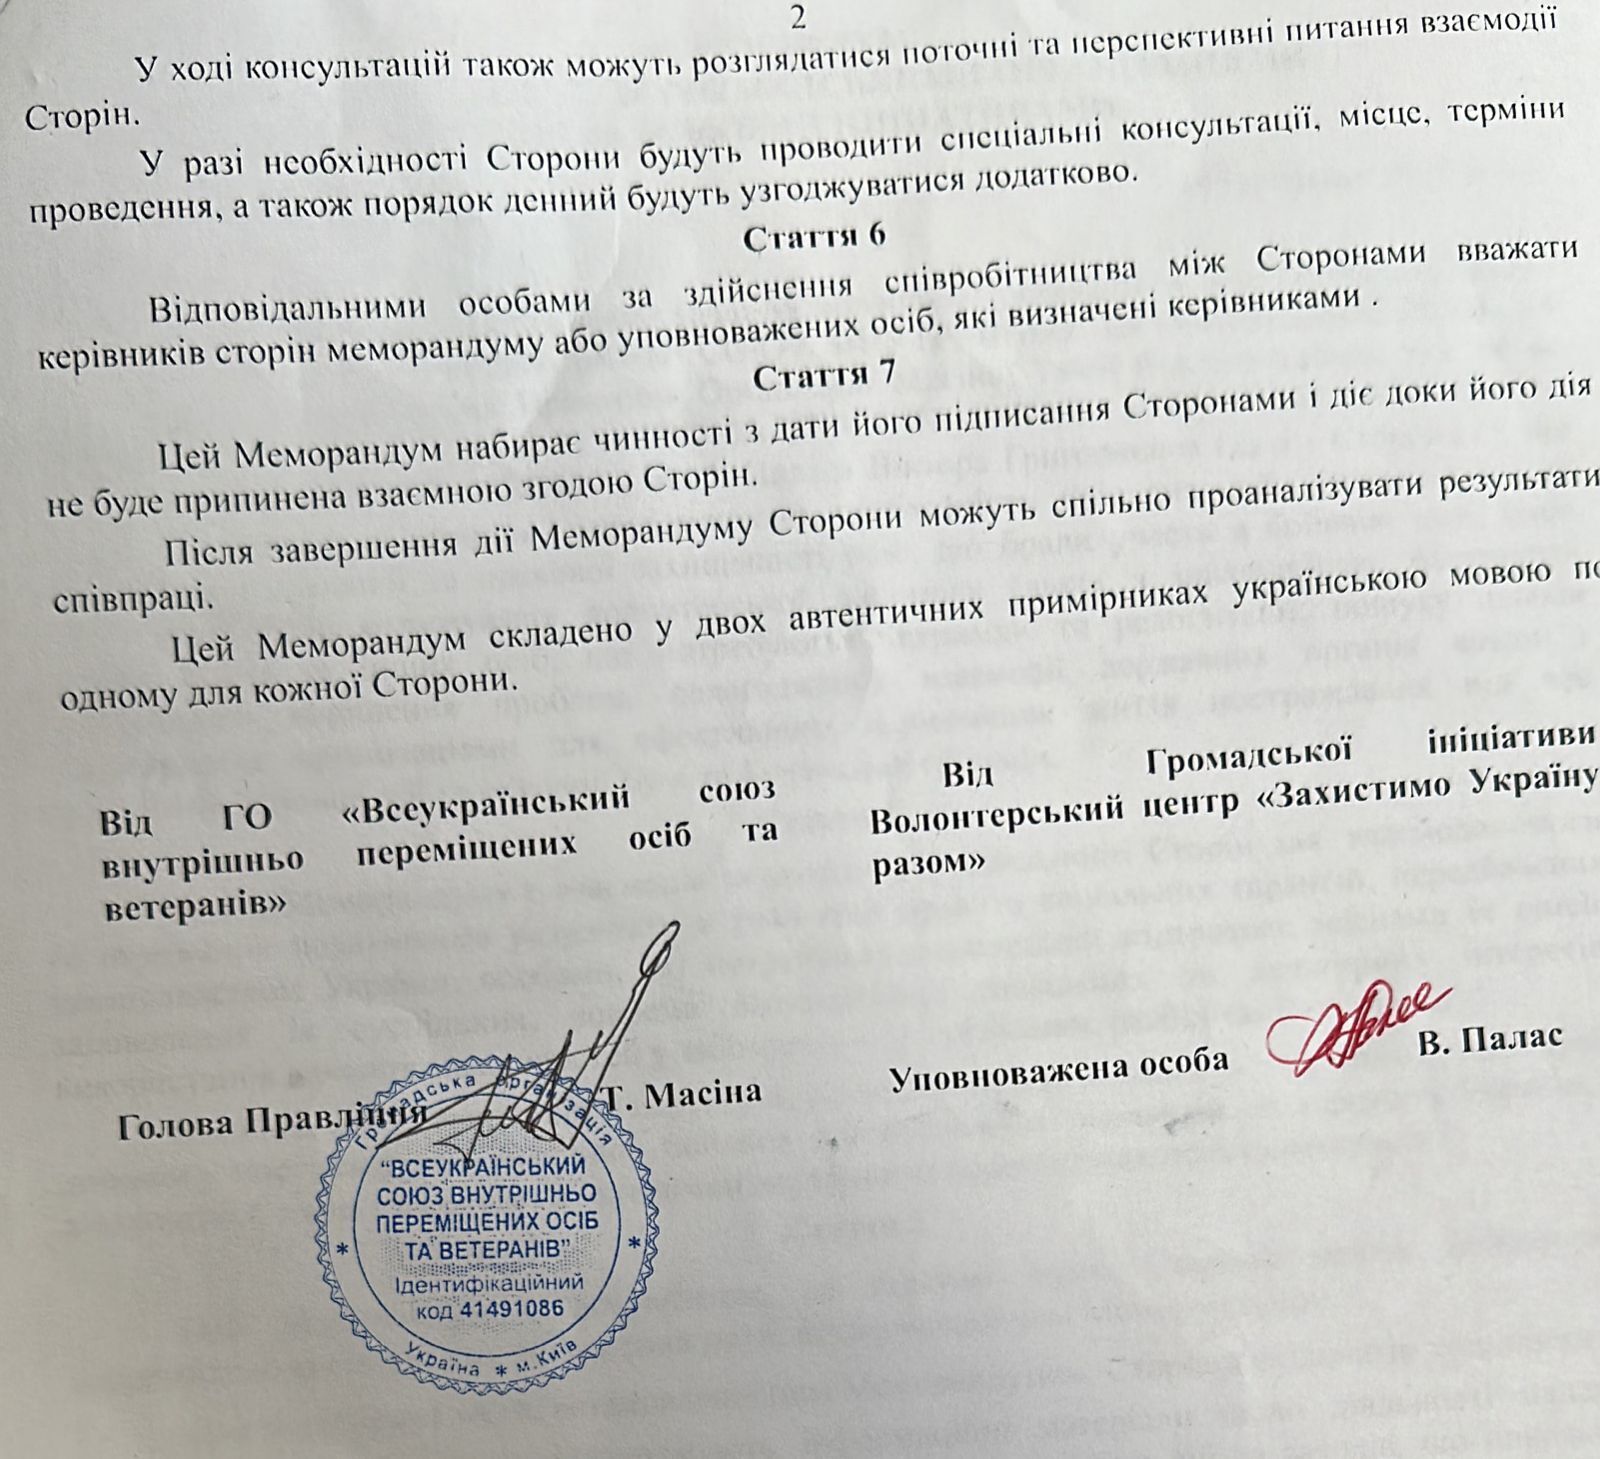 ОО ''Всеукраинский союз внутренне перемещенных лиц и ветеранов'' (Буча) и Львовский волонтерский центр ''Защитим Украину вместе'' (Львов) подписали Меморандум о сотрудничестве